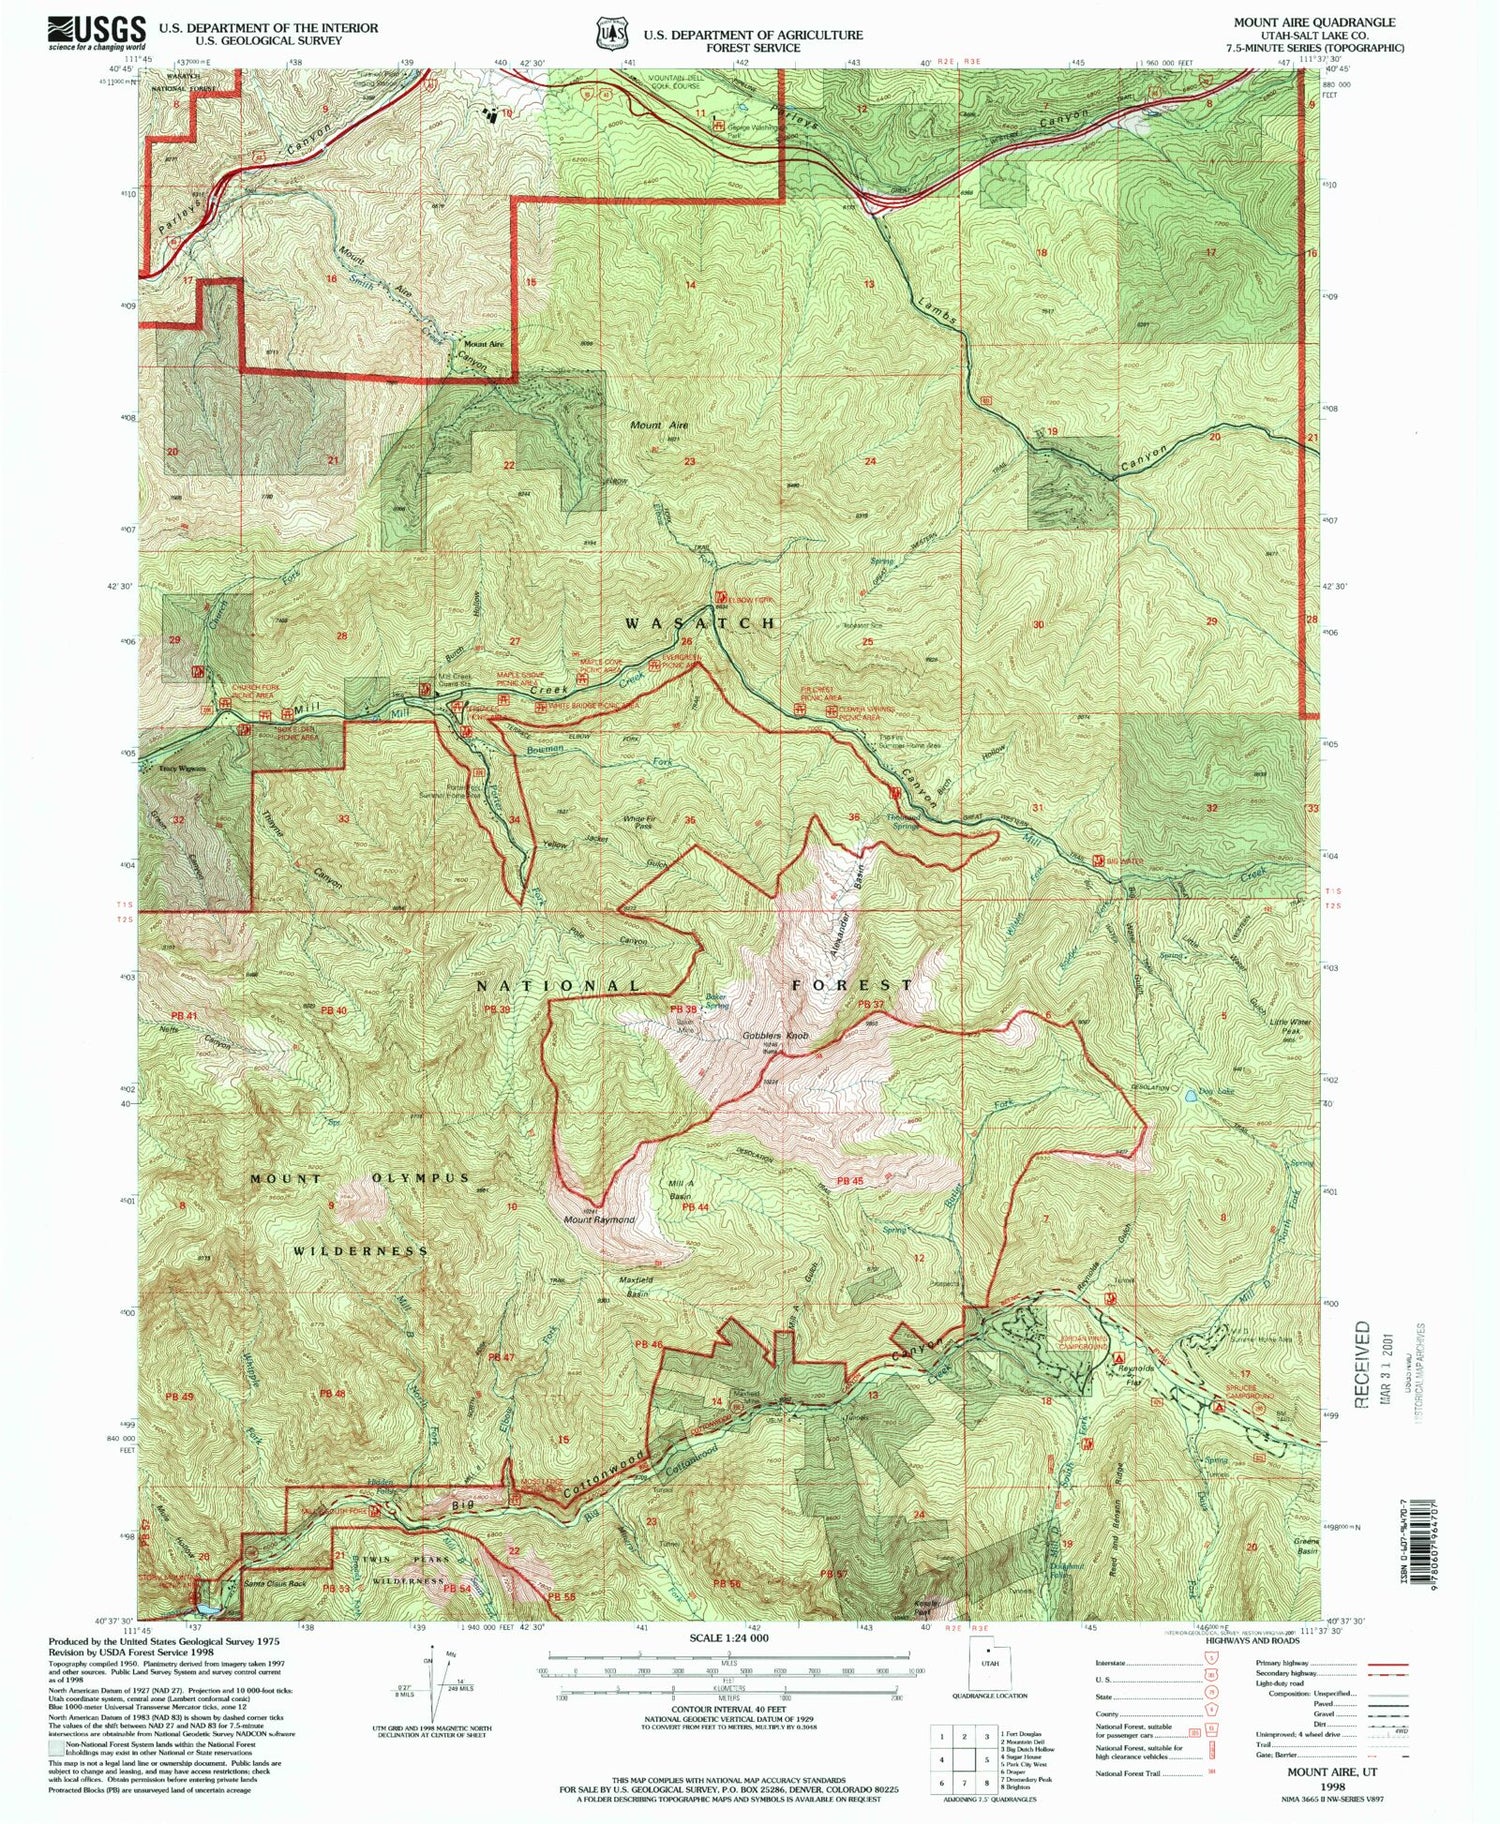 USGS Classic Mount Aire Utah 7.5'x7.5' Topo Map Image